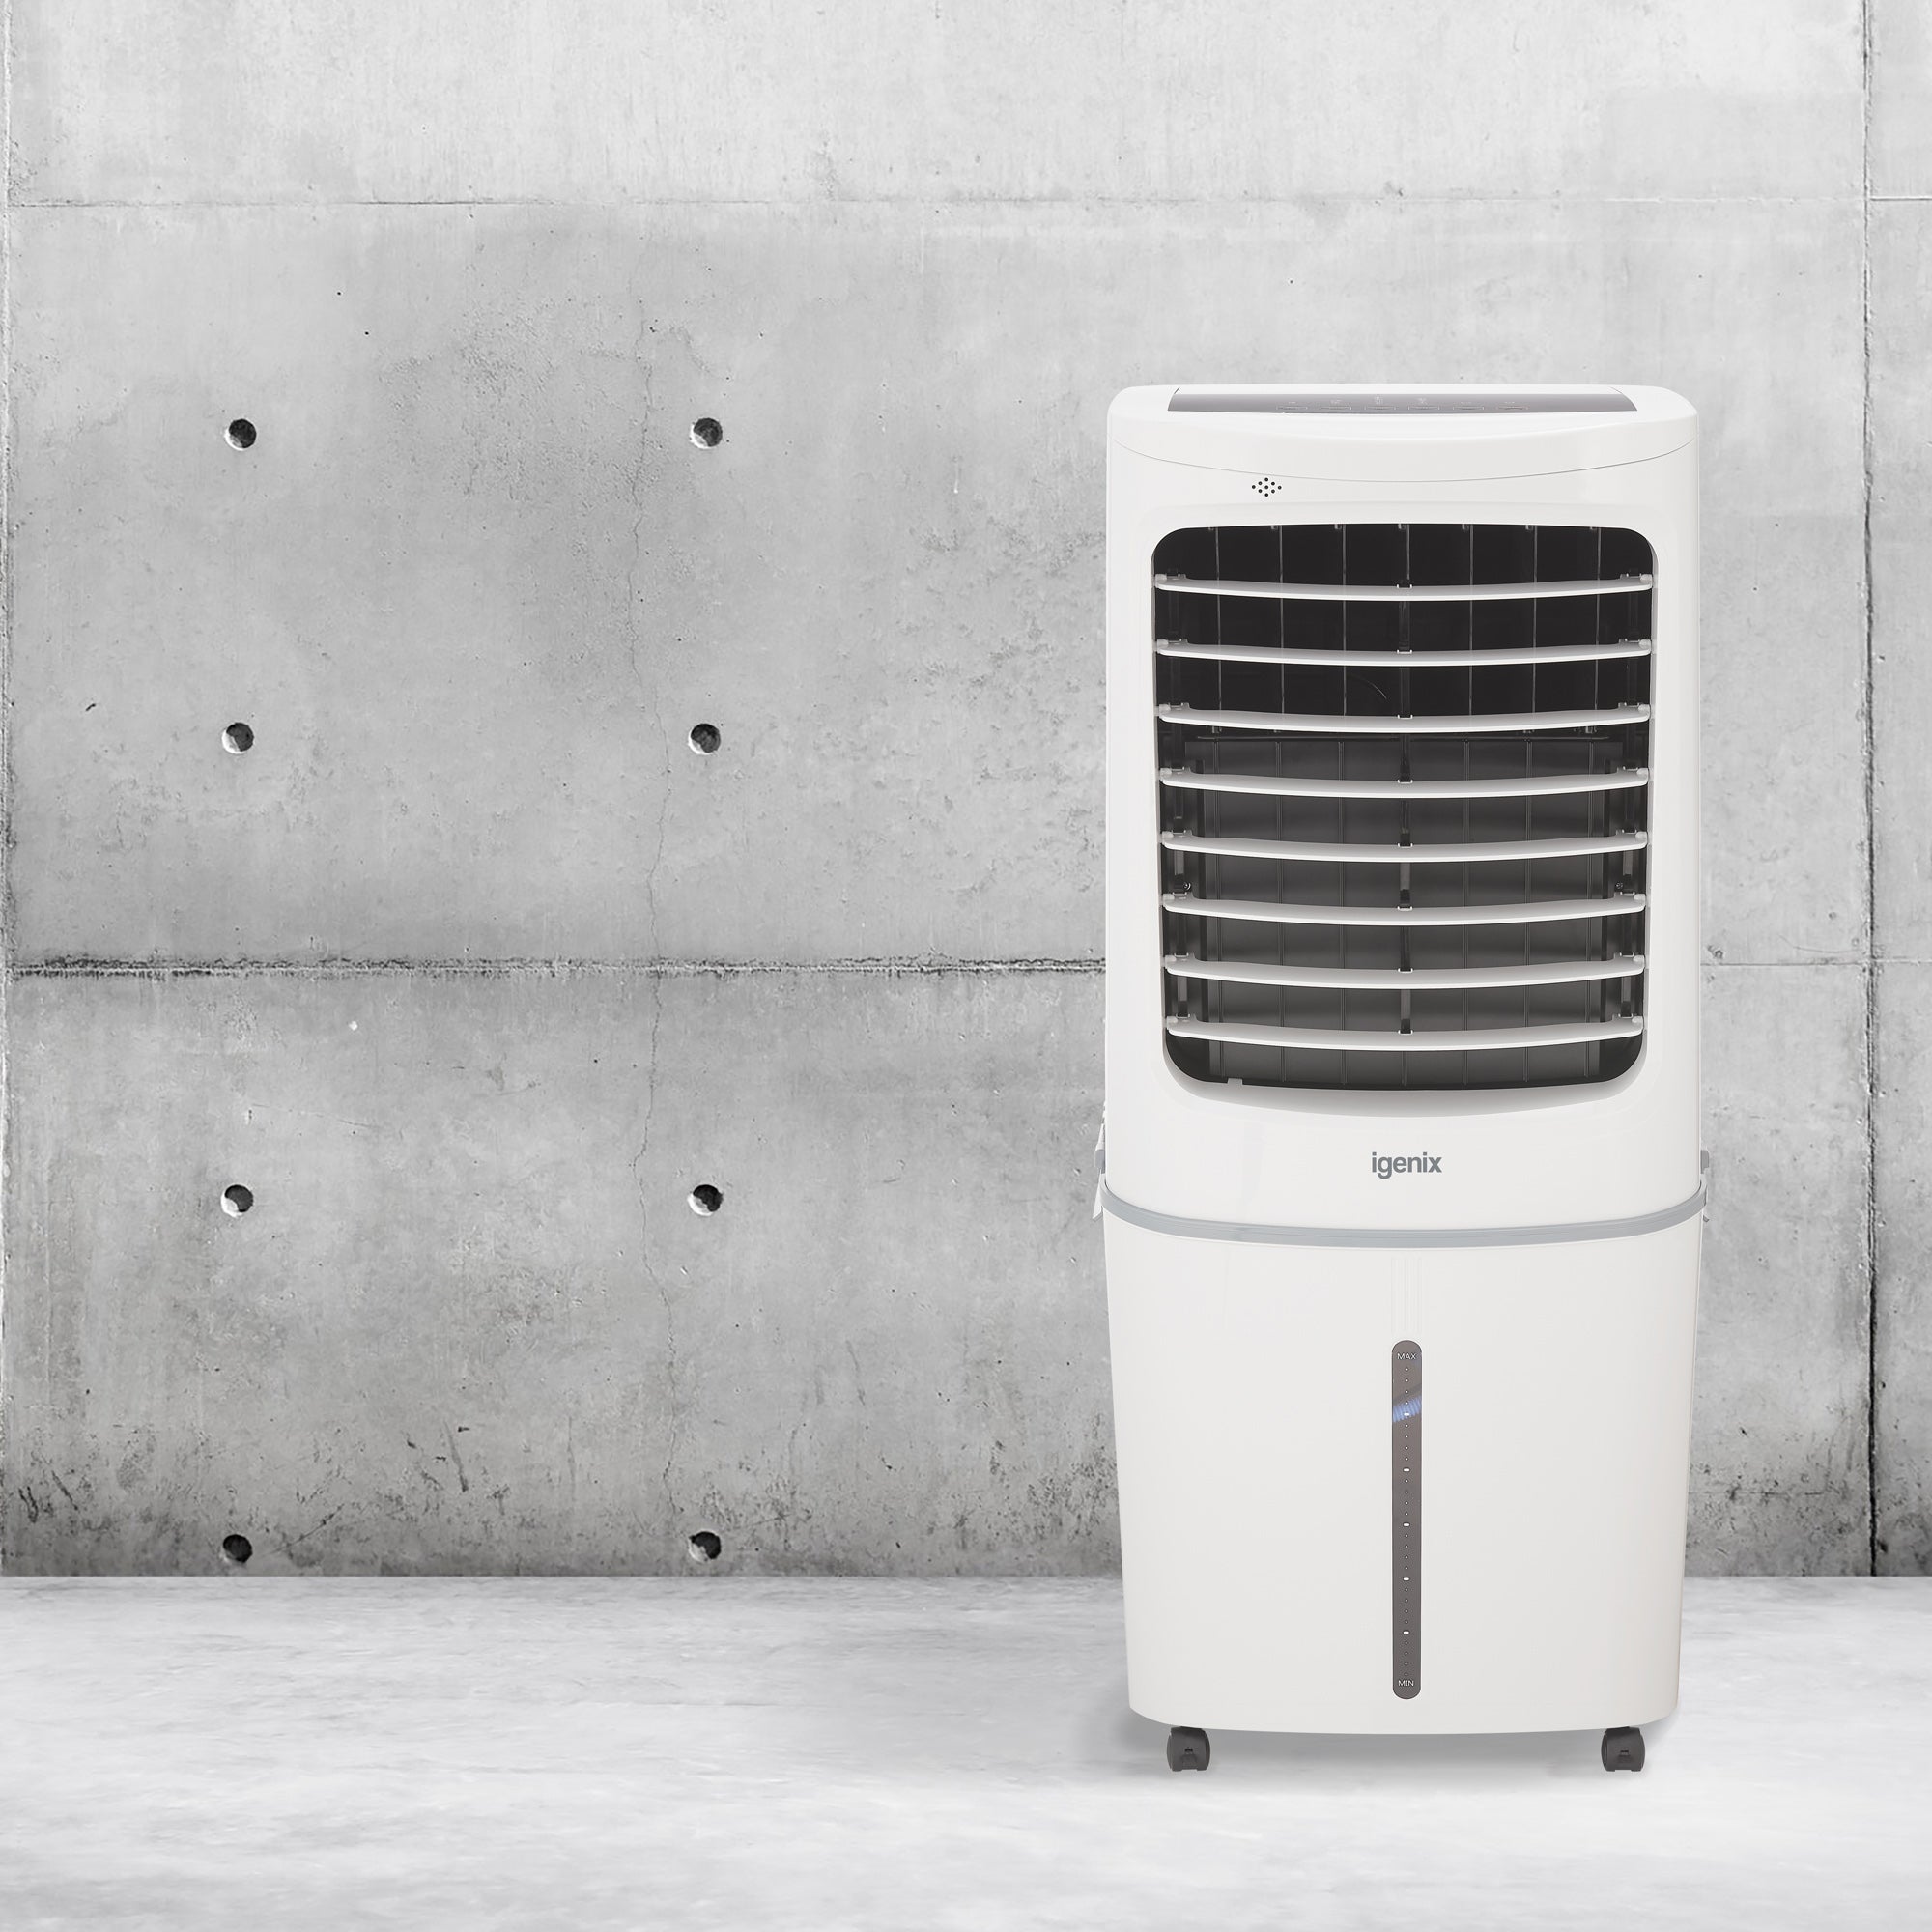 Igenix 50L Air Cooler